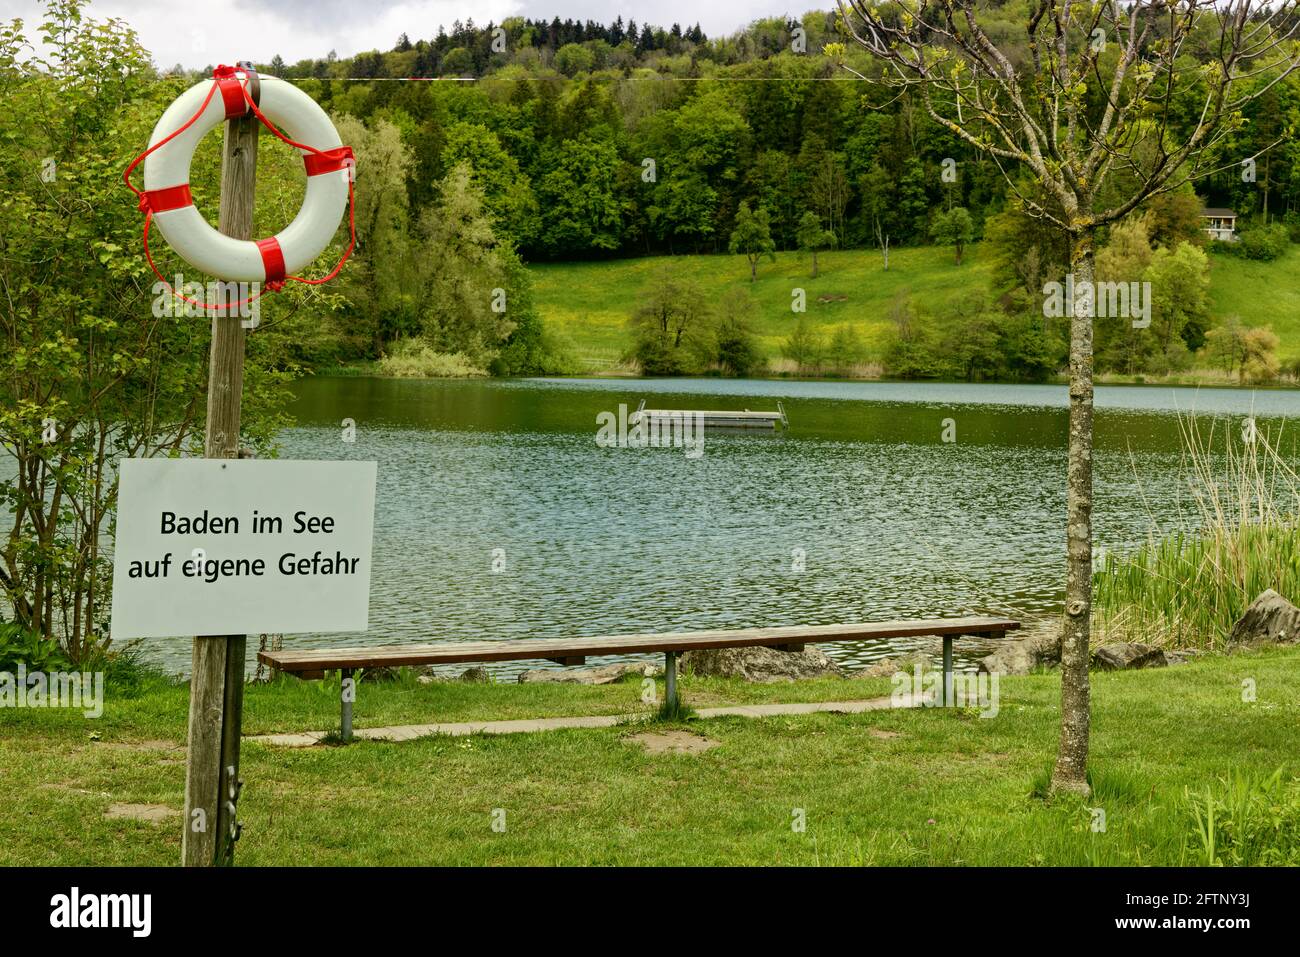 lac piscine extérieure avec plate-forme de baignade dans un paysage vert avec signe d'avis en allemand, traduction de texte allemand: nager dans le lac à vos propres risques à Banque D'Images